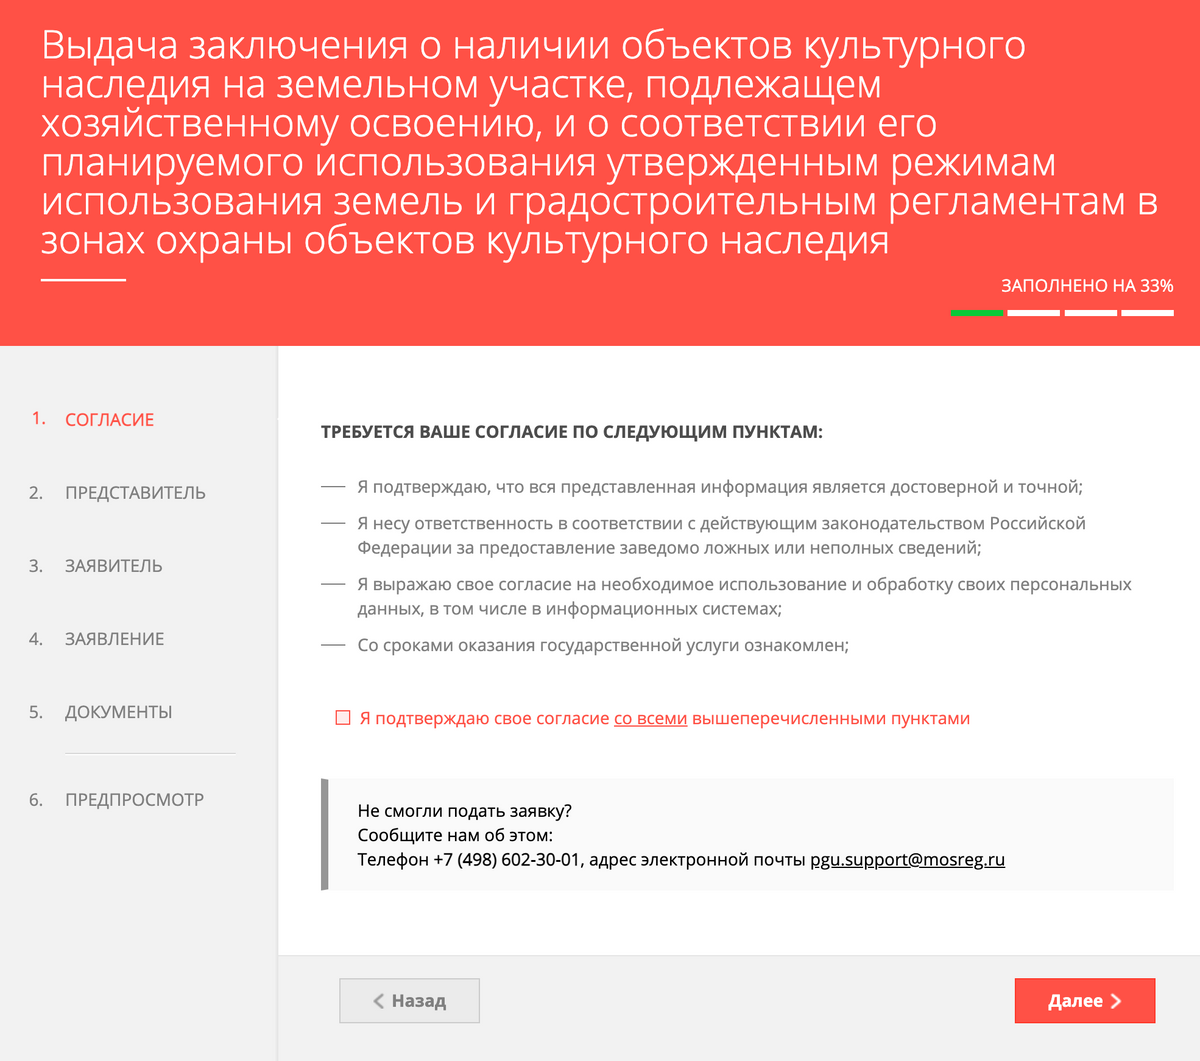 Заявление подается онлайн на портале госуслуг региона. Источник: mosreg.ru